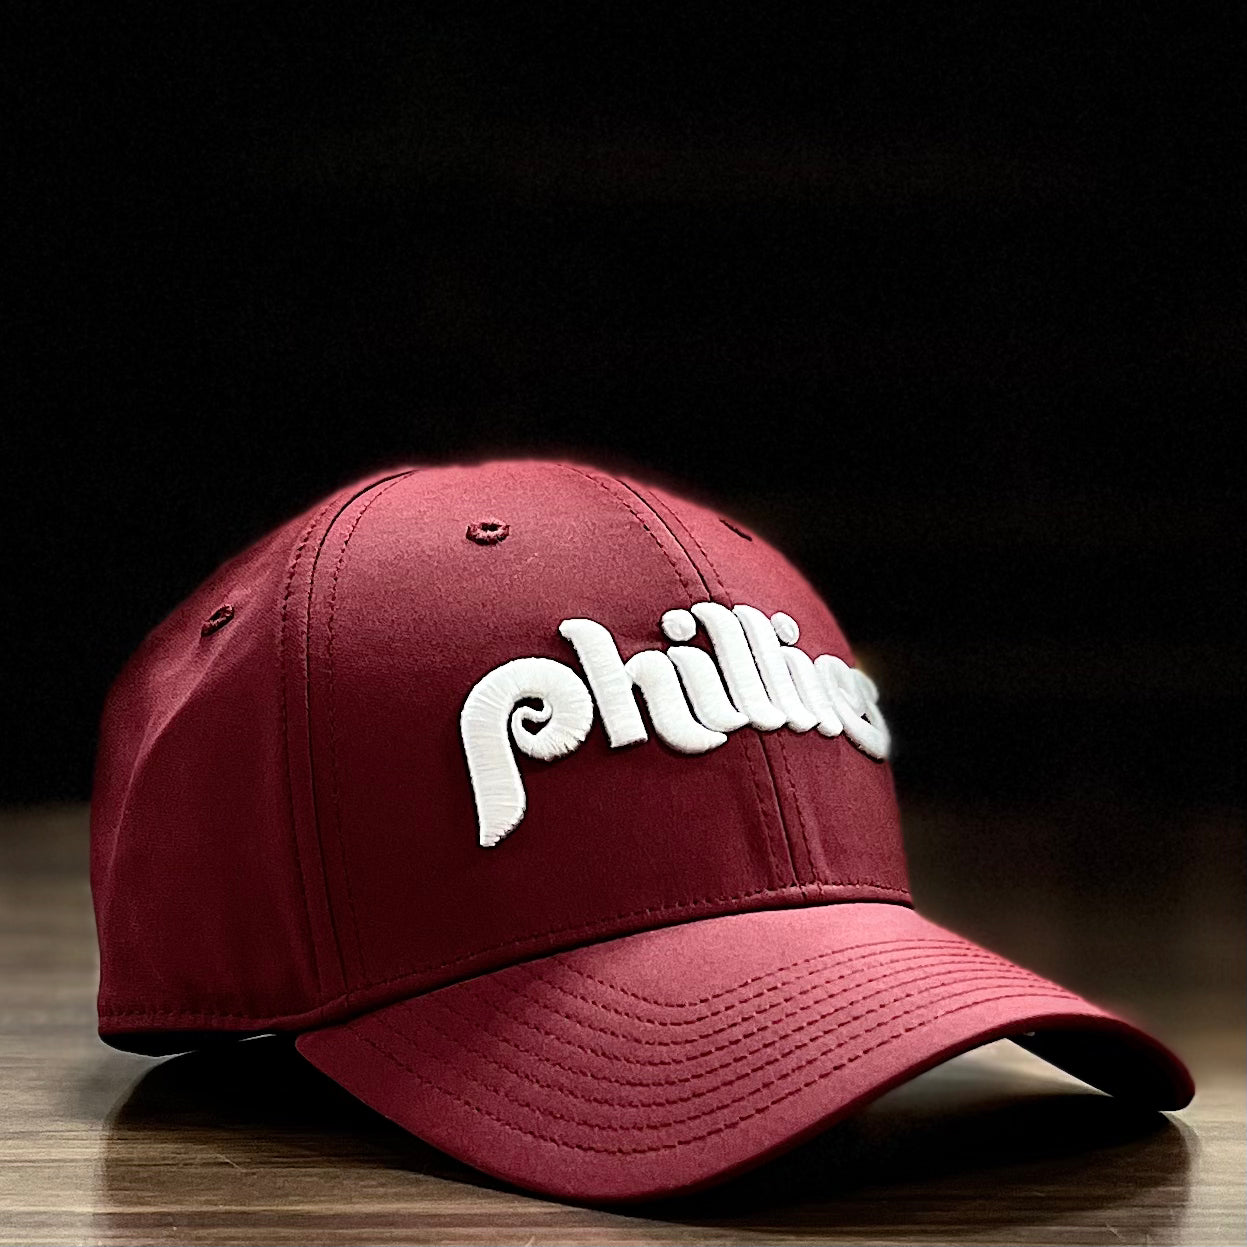 Phillies Cooperstown Trucker Hat